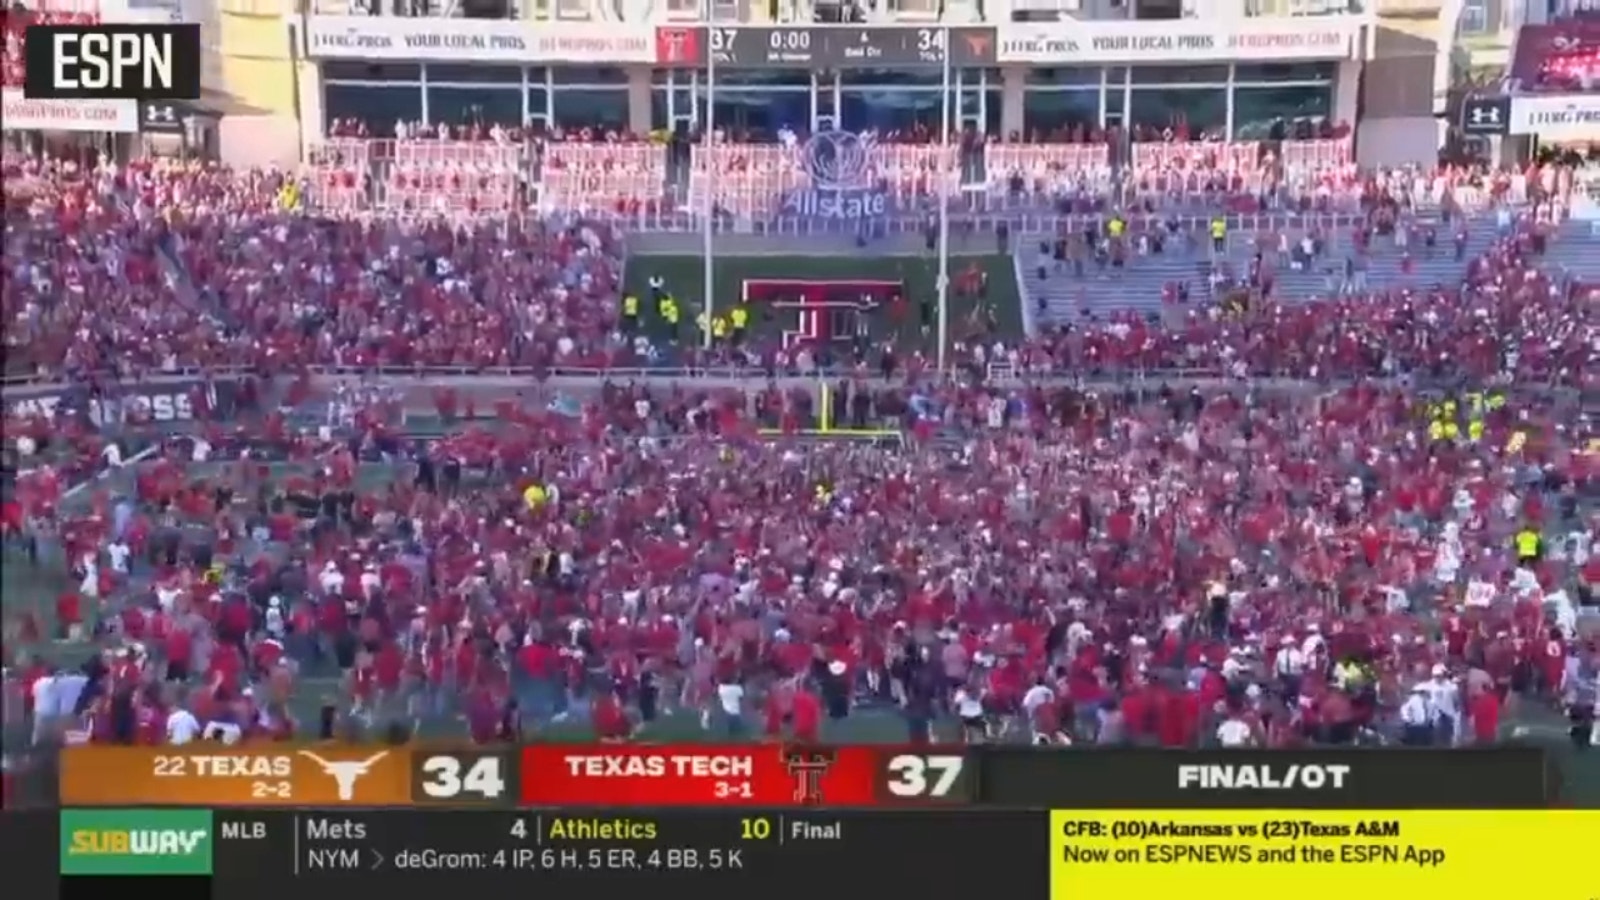 Fans RUSH the field after Texas Tech stuns No. 22 Texas